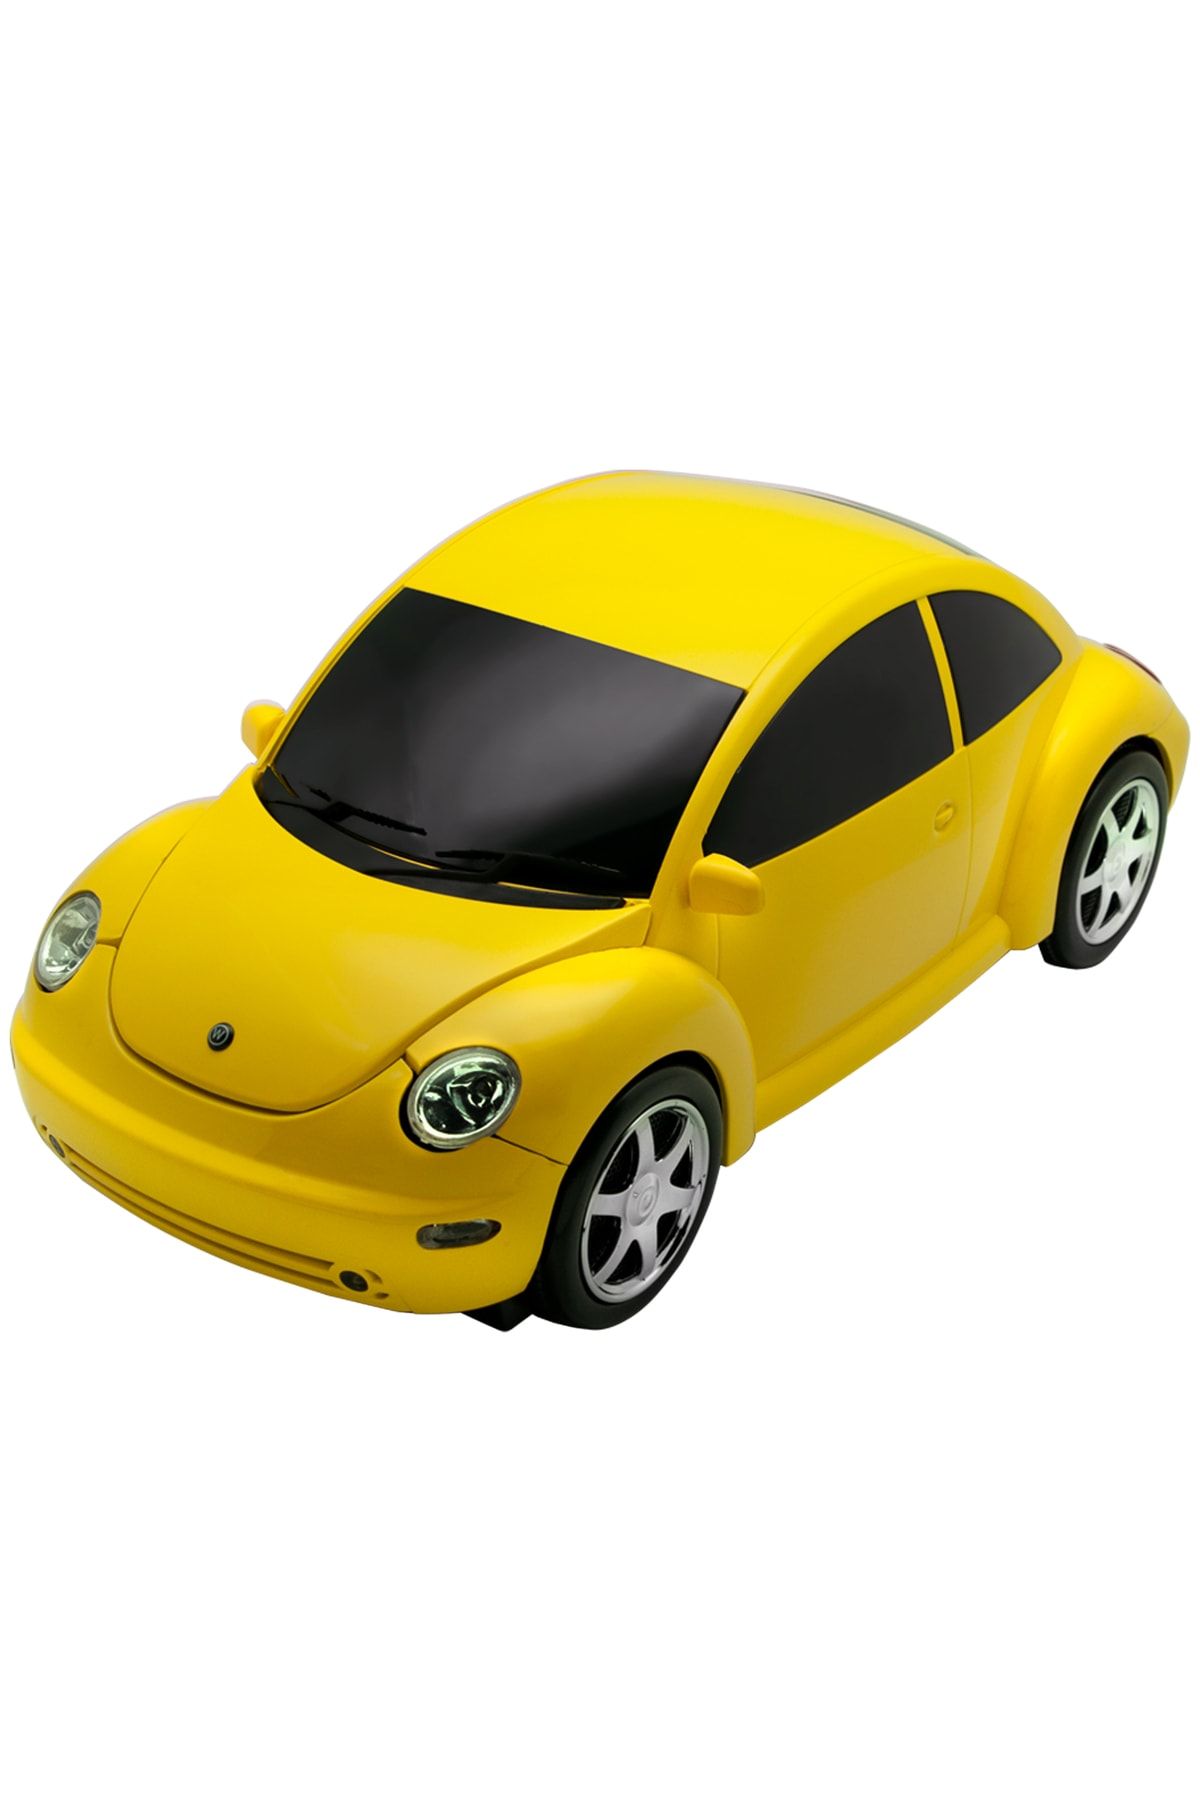 Nozamatech Dvd Okuyucu - Beetle Model